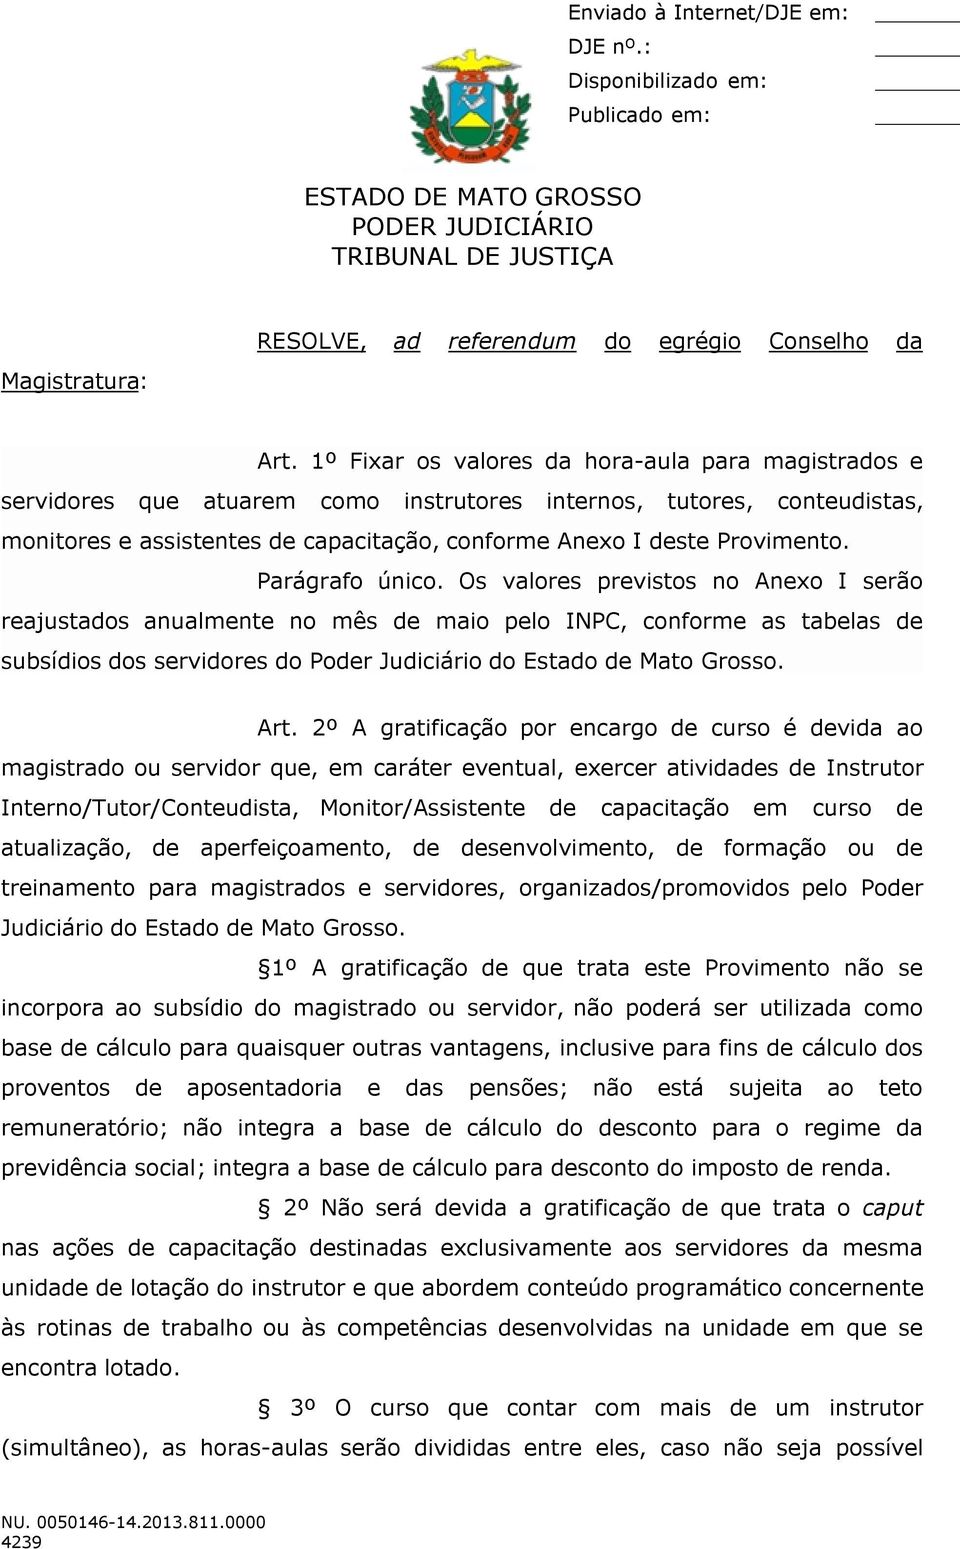 Parágrafo único. Os valores previstos no Anexo I serão reajustados anualmente no mês de maio pelo INPC, conforme as tabelas de subsídios dos servidores do Poder Judiciário do Estado de Mato Grosso.